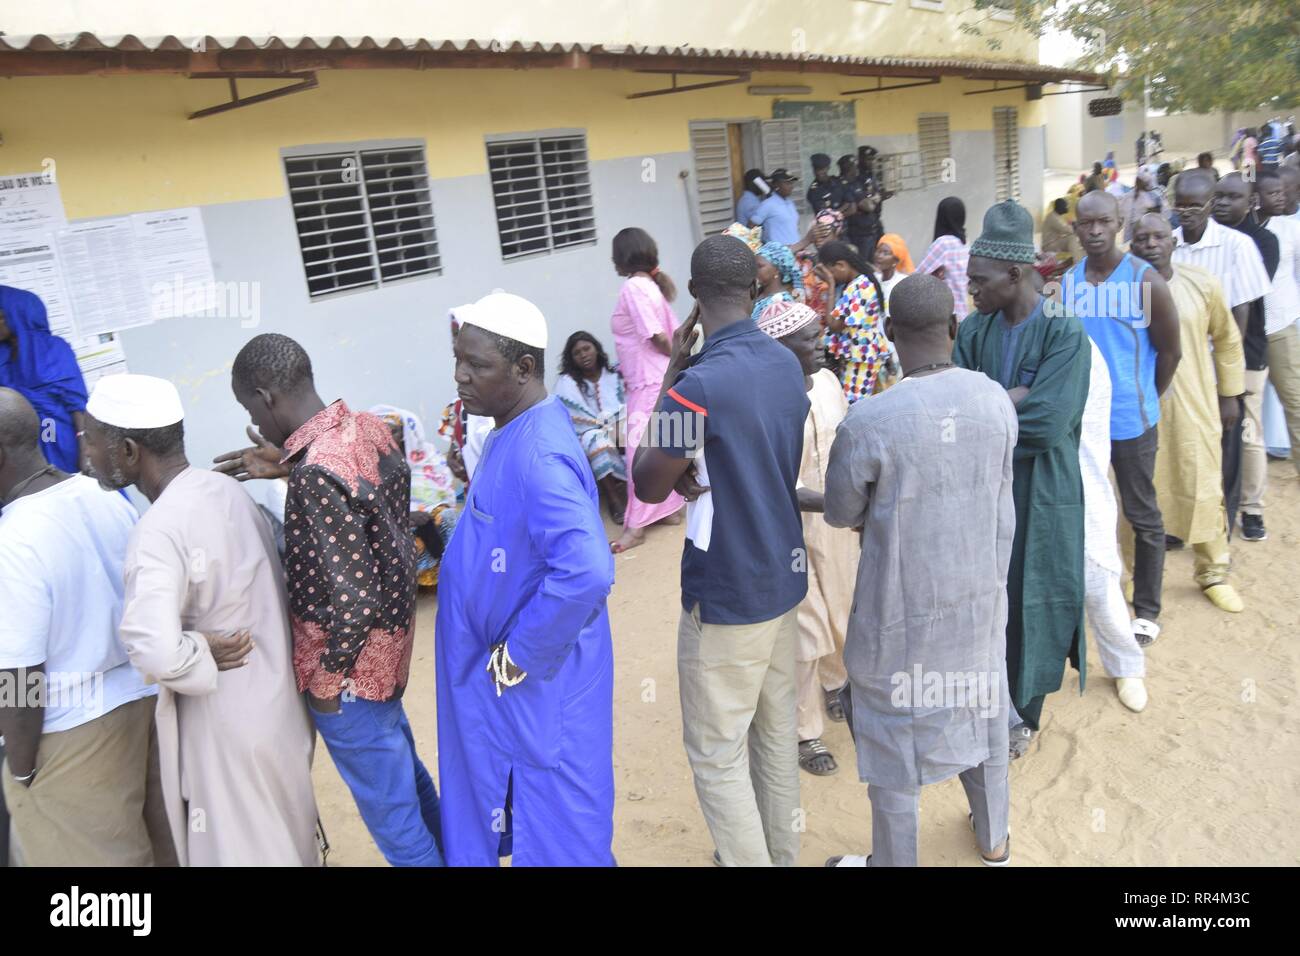 (190224) -- DAKAR, 24 février 2019 (Xinhua) -- Les électeurs devant un bureau de vote à Fatick, au Sénégal, le 24 février 2019. L'élection présidentielle sénégalaise a commencé dimanche à 08:00 heure locale (08:00 GMT) et 6,68 millions d'électeurs inscrits sont tenus de voter dans tout le pays et à l'étranger. La contestation de l'élection présidentielle sont siège titulaire le président Macky Sall, ancien premier ministre Idrissa Seck, l'ancien ministre des affaires étrangères, Madicke Niang, professeur Issa Fall, et ancien inspecteur des impôts Ousmane Sonko. Seck est considérée par les médias comme le principal challenger de Sall. Un total de Banque D'Images